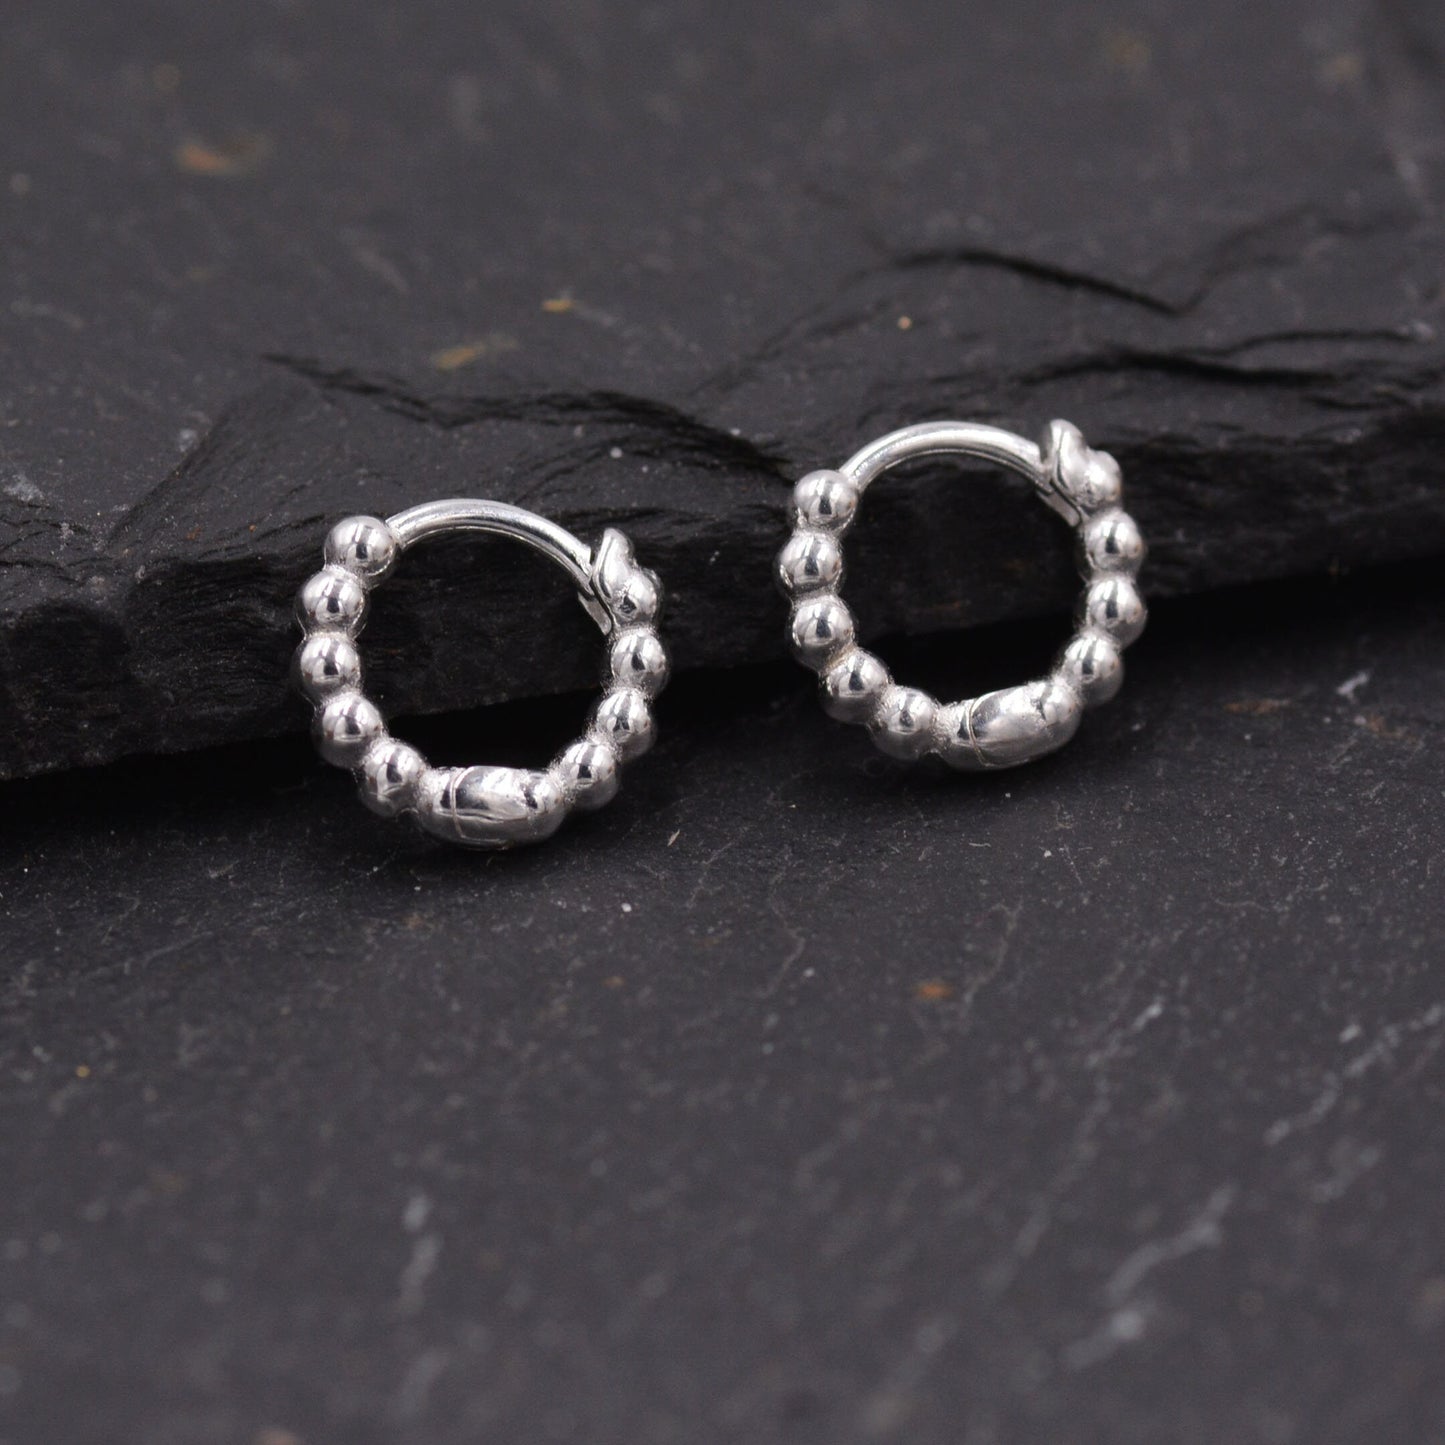 Sterling Silver Small Huggie Hoop Earrings, Pebble Circle Round Earrings, Minimalist Geometric Design J42